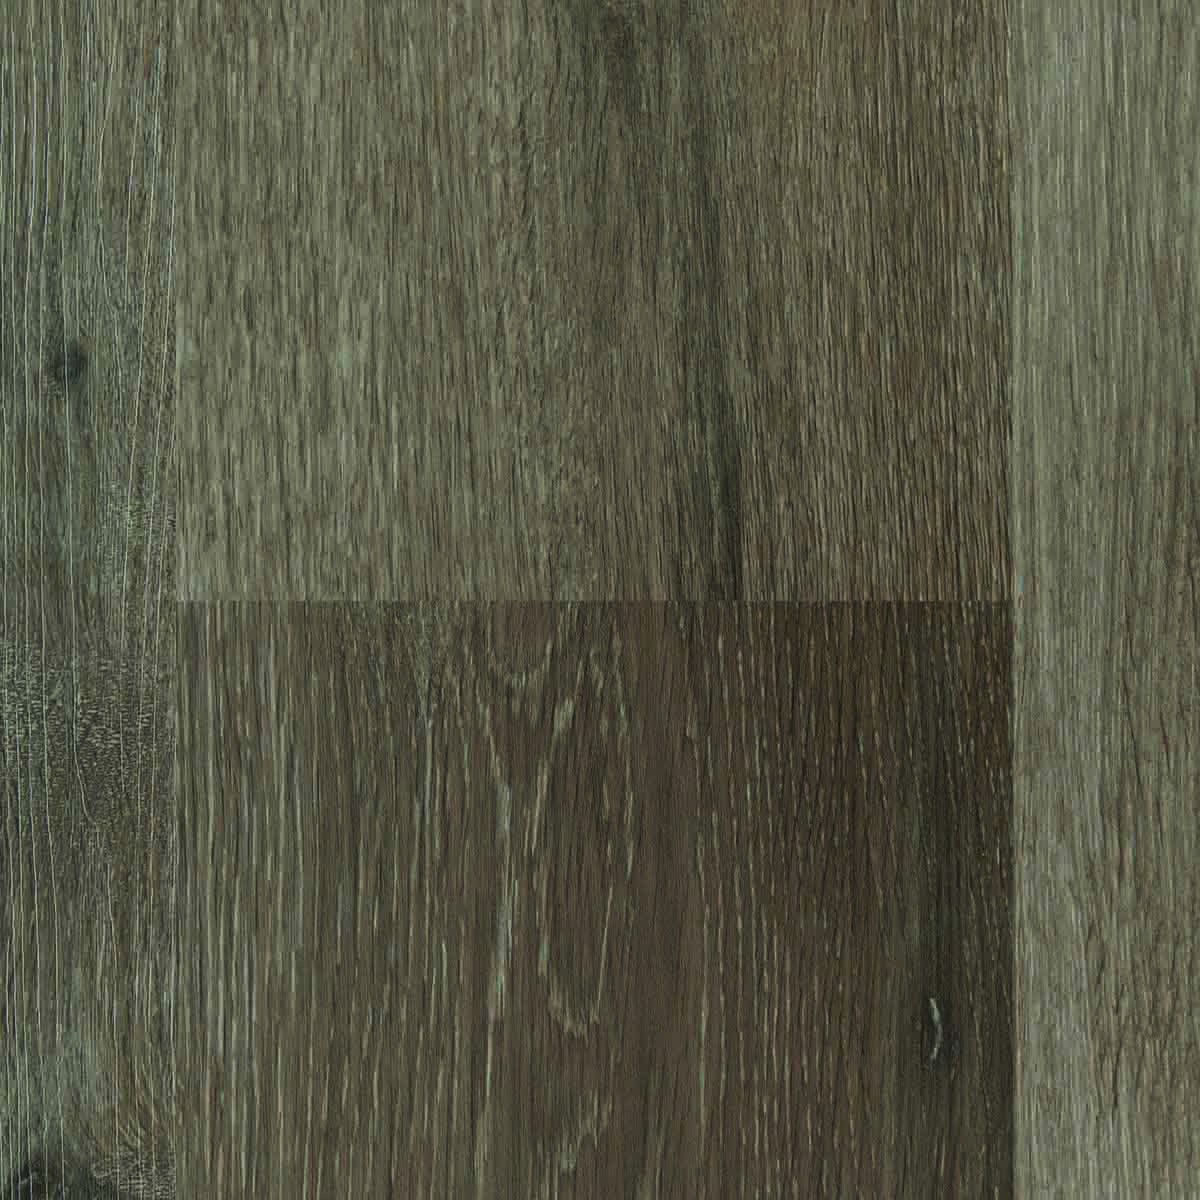 Cork floor wood effect